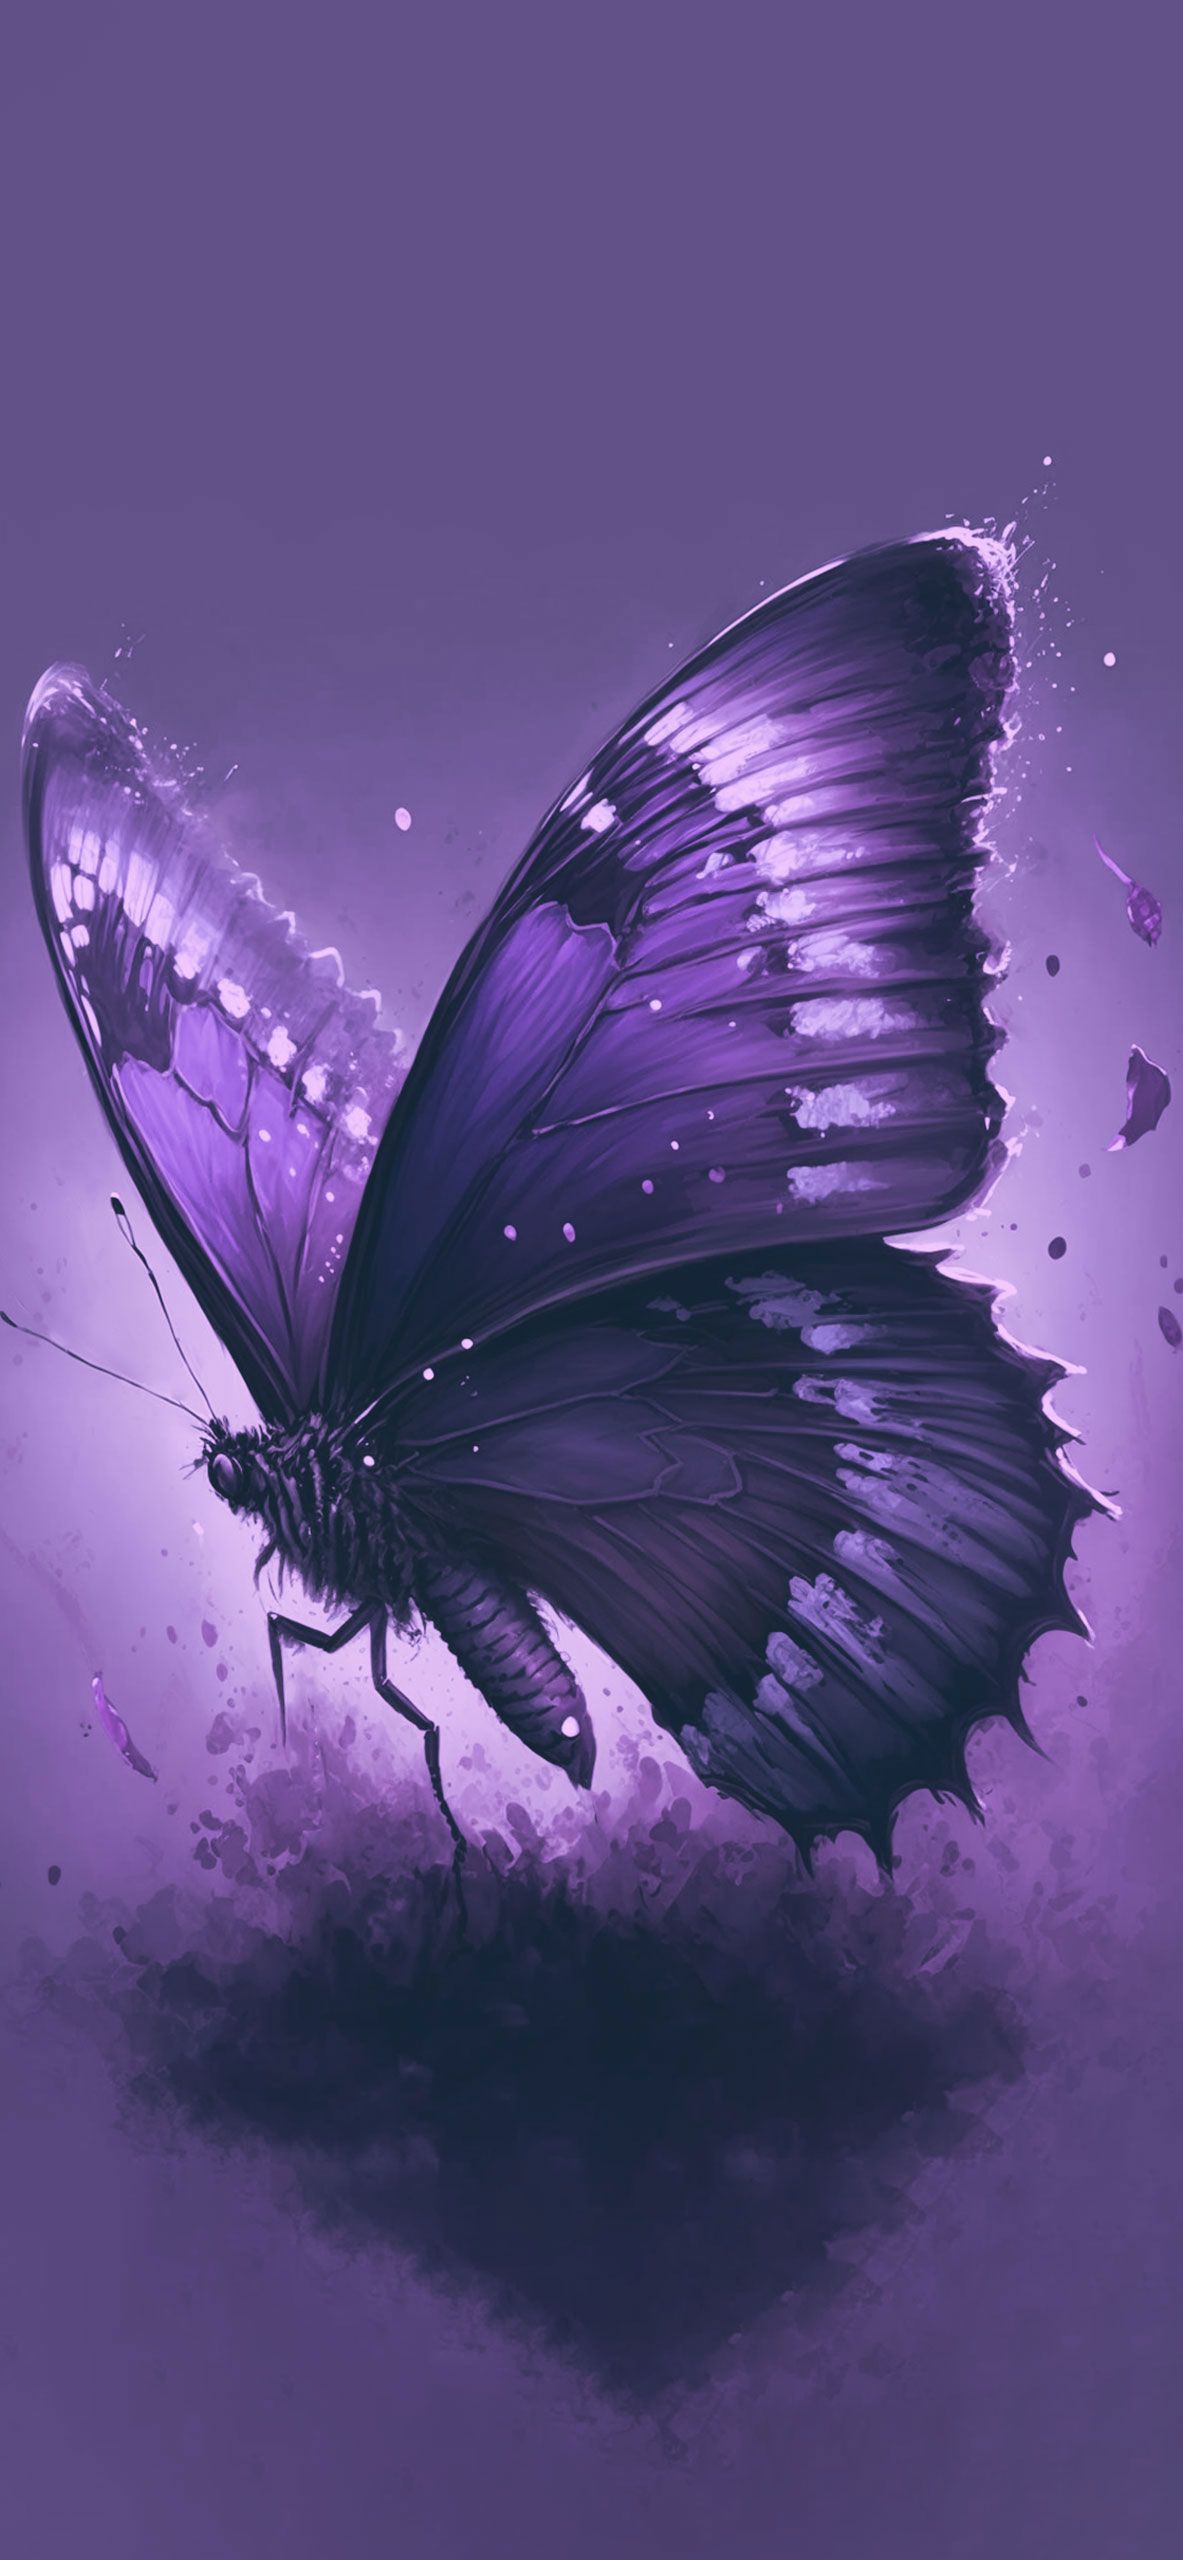  Schmetterling Hintergrundbild 1183x2560. Purple Butterfly Wallpaper Aesthetic Wallpaper iPhone